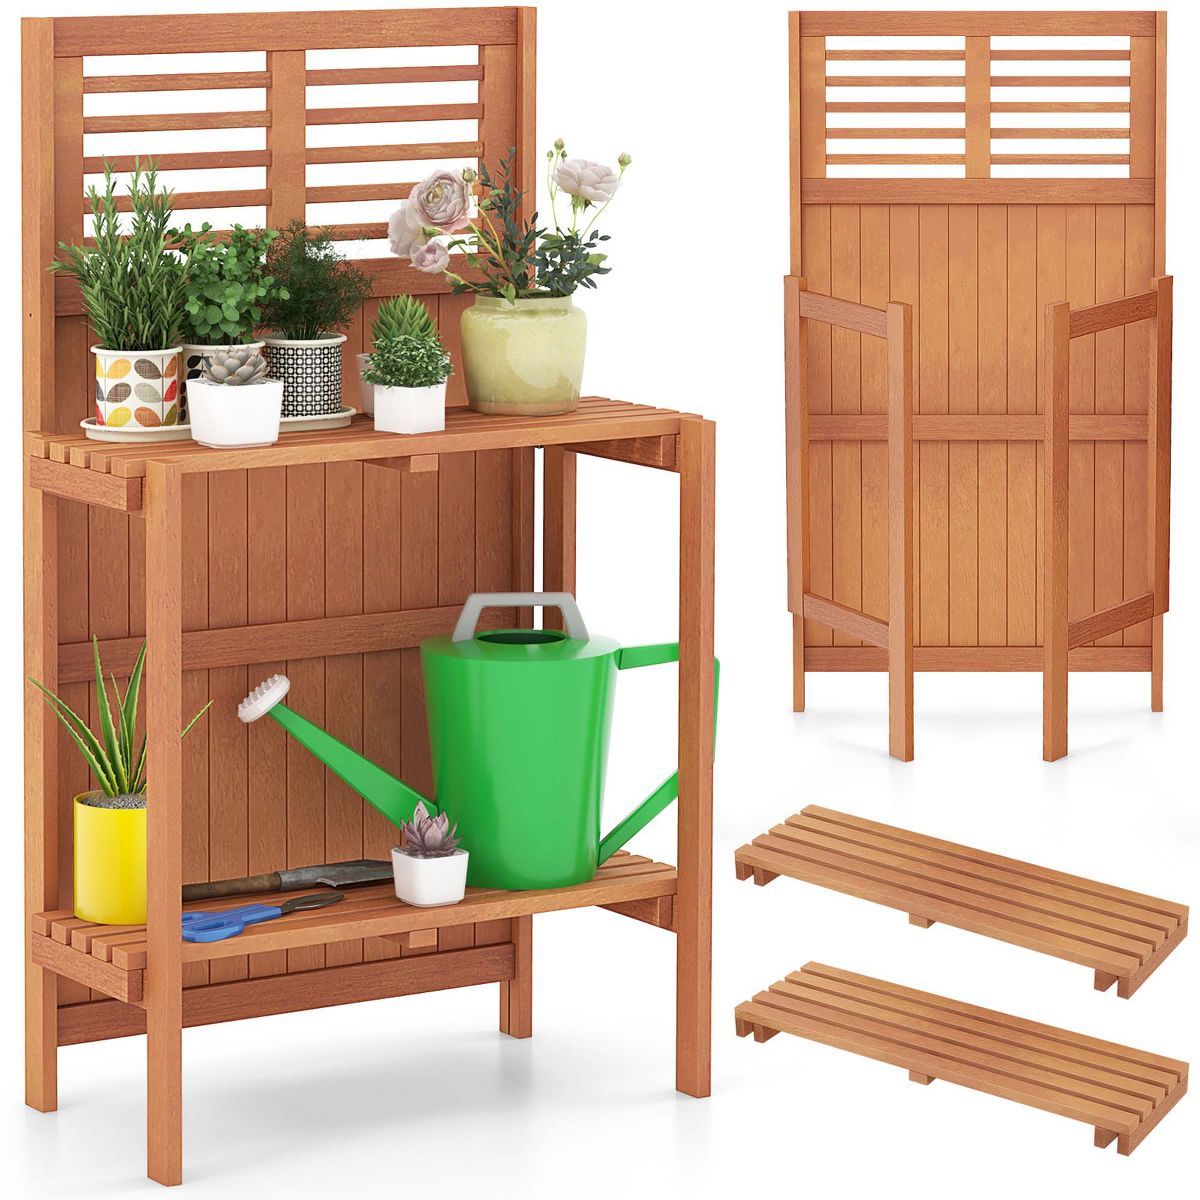 Costway Wood Potting Bench Waterproof Garden Table with 2-Tier Open Storage Shelf | Target